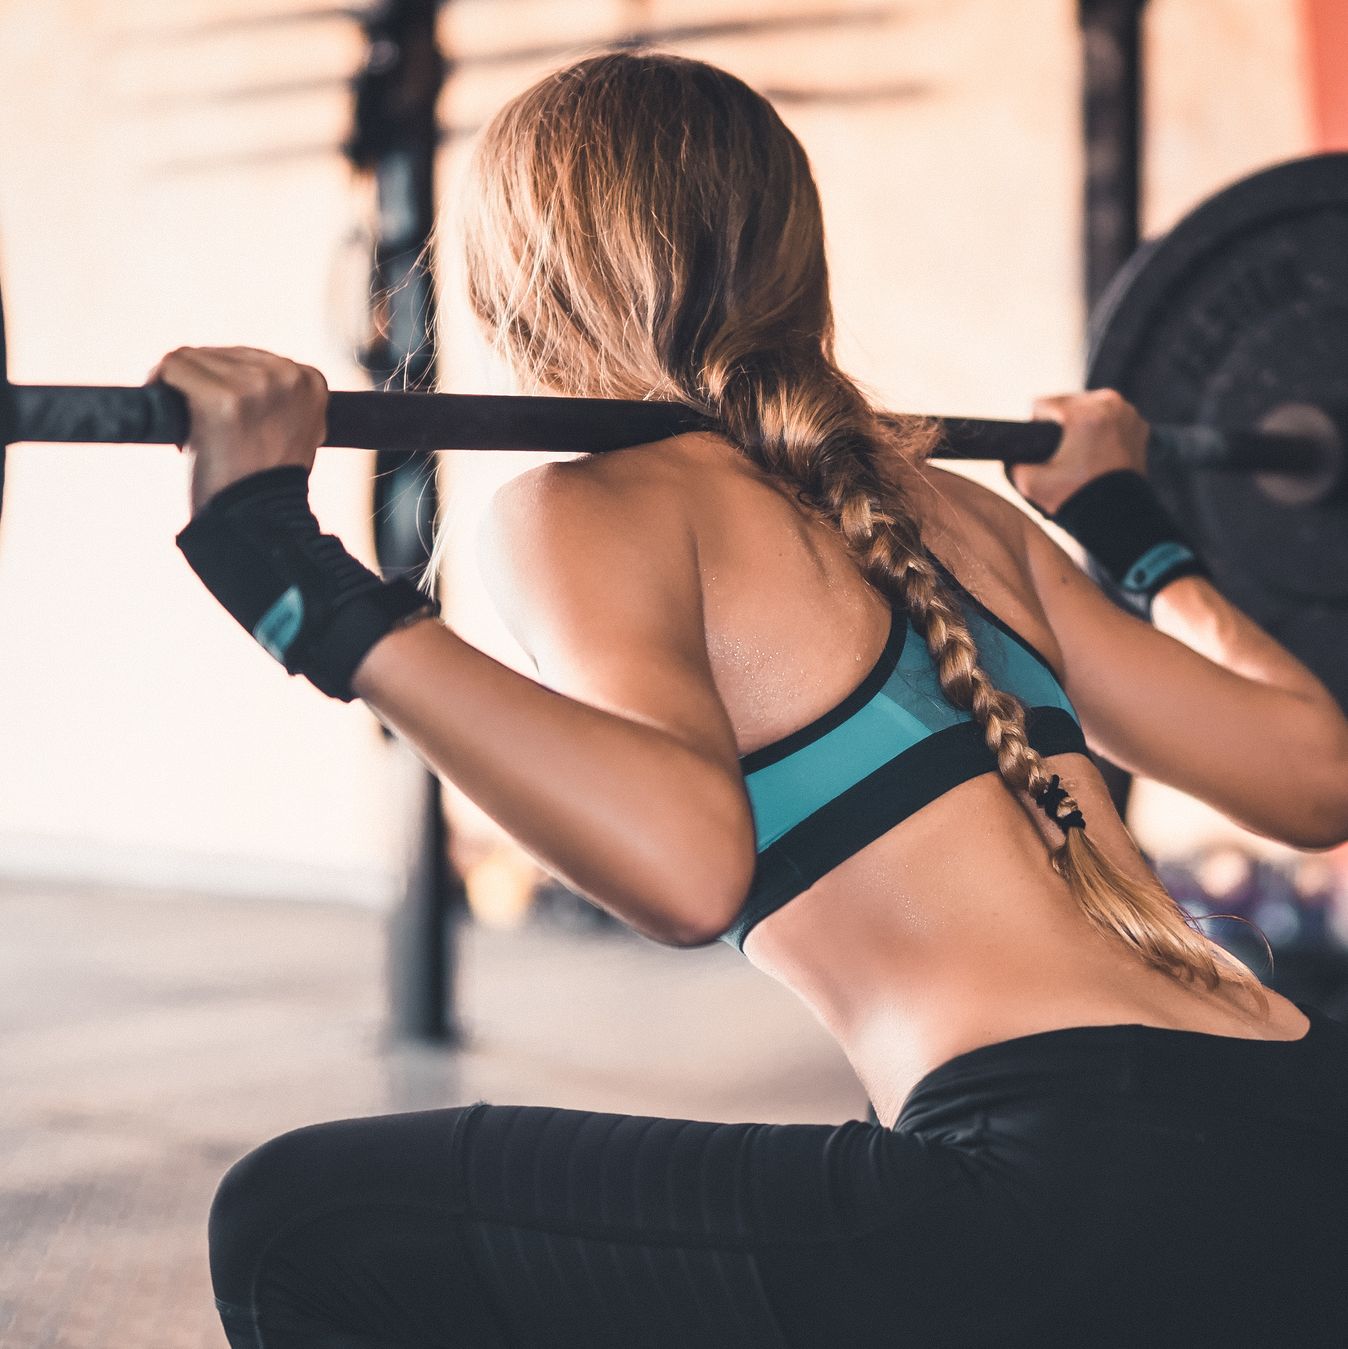 Entrenar con pesas tiene beneficios para las mujeres